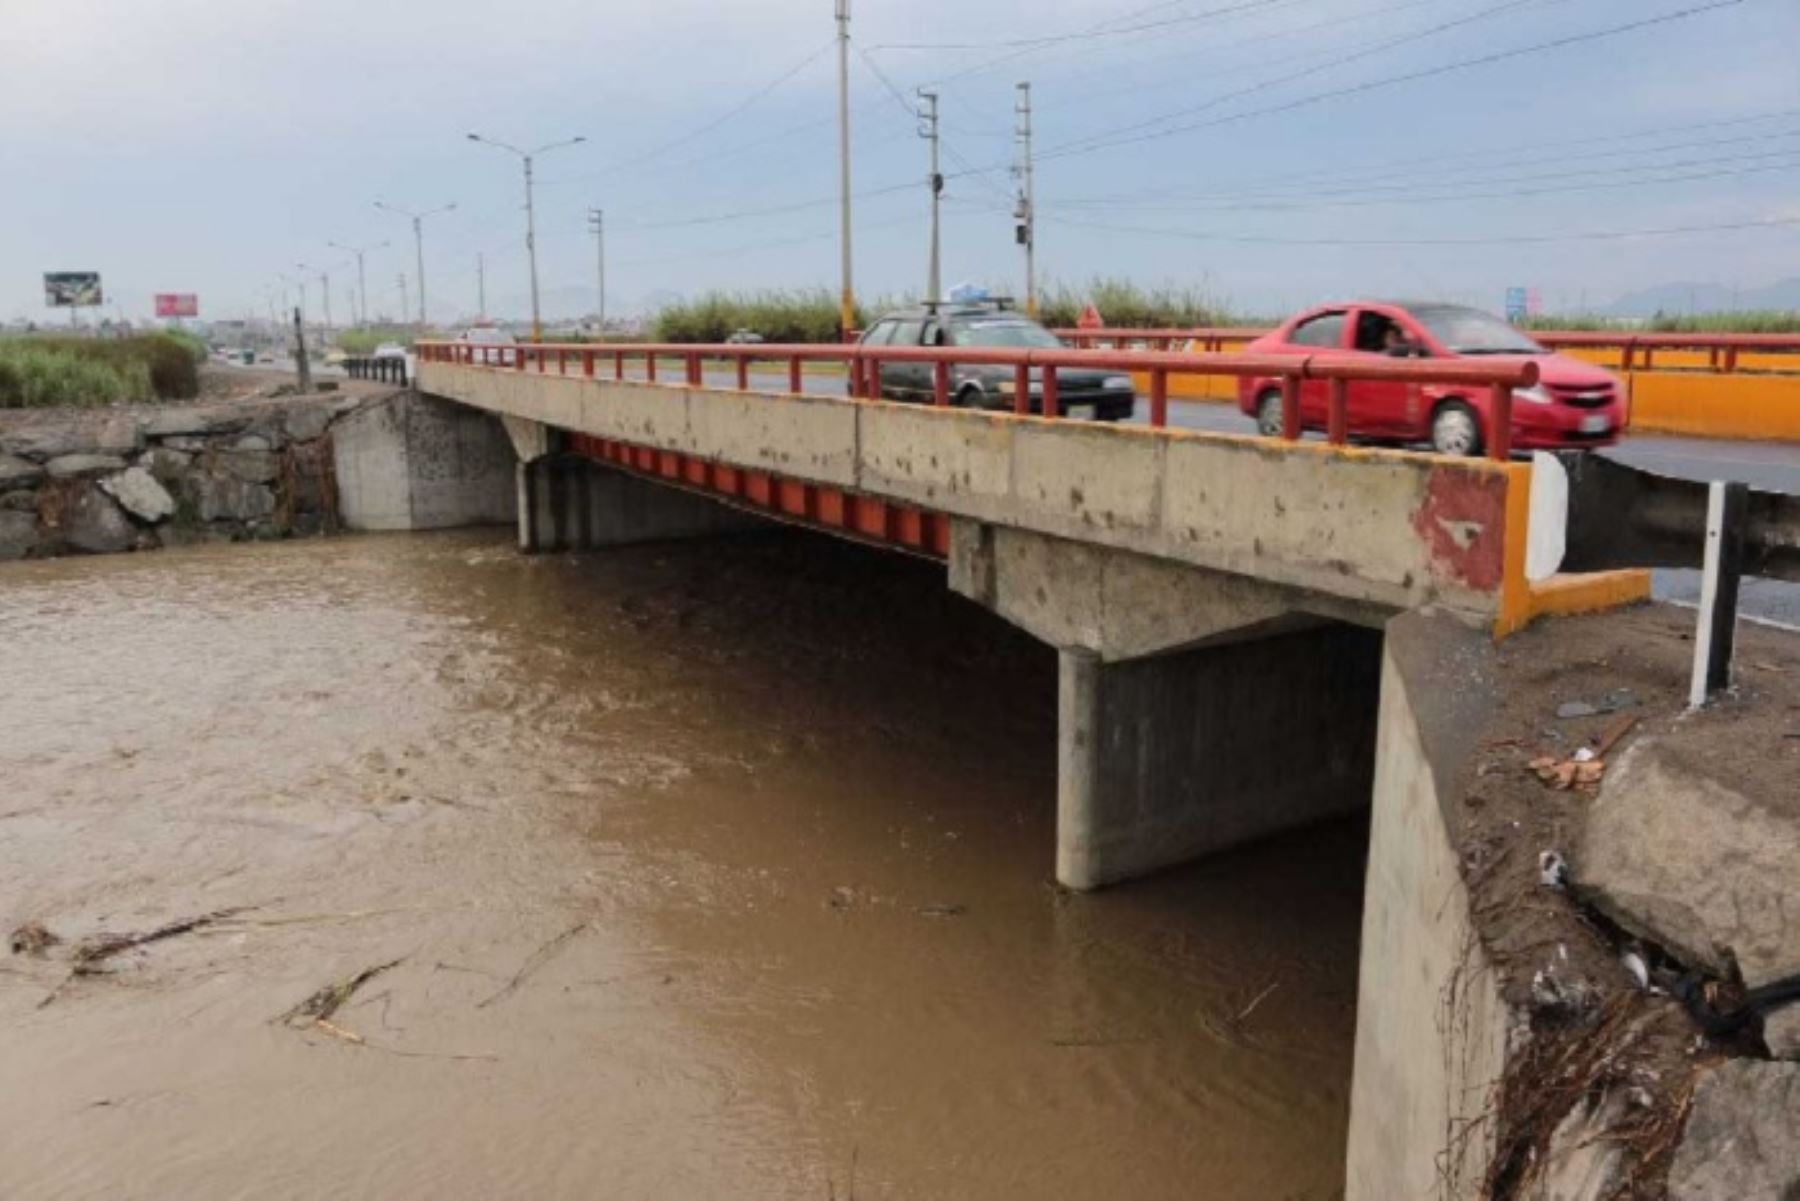 El último monitoreo realizado por la Autoridad Nacional del Agua (ANA) a los ríos de Áncash, indica que estos se mantienen con un caudal normal, disminuyendo los riesgos de un desborde a causa de lluvias intensas; informó el Centro de Operaciones de Emergencia Regional (COER) de Áncash.